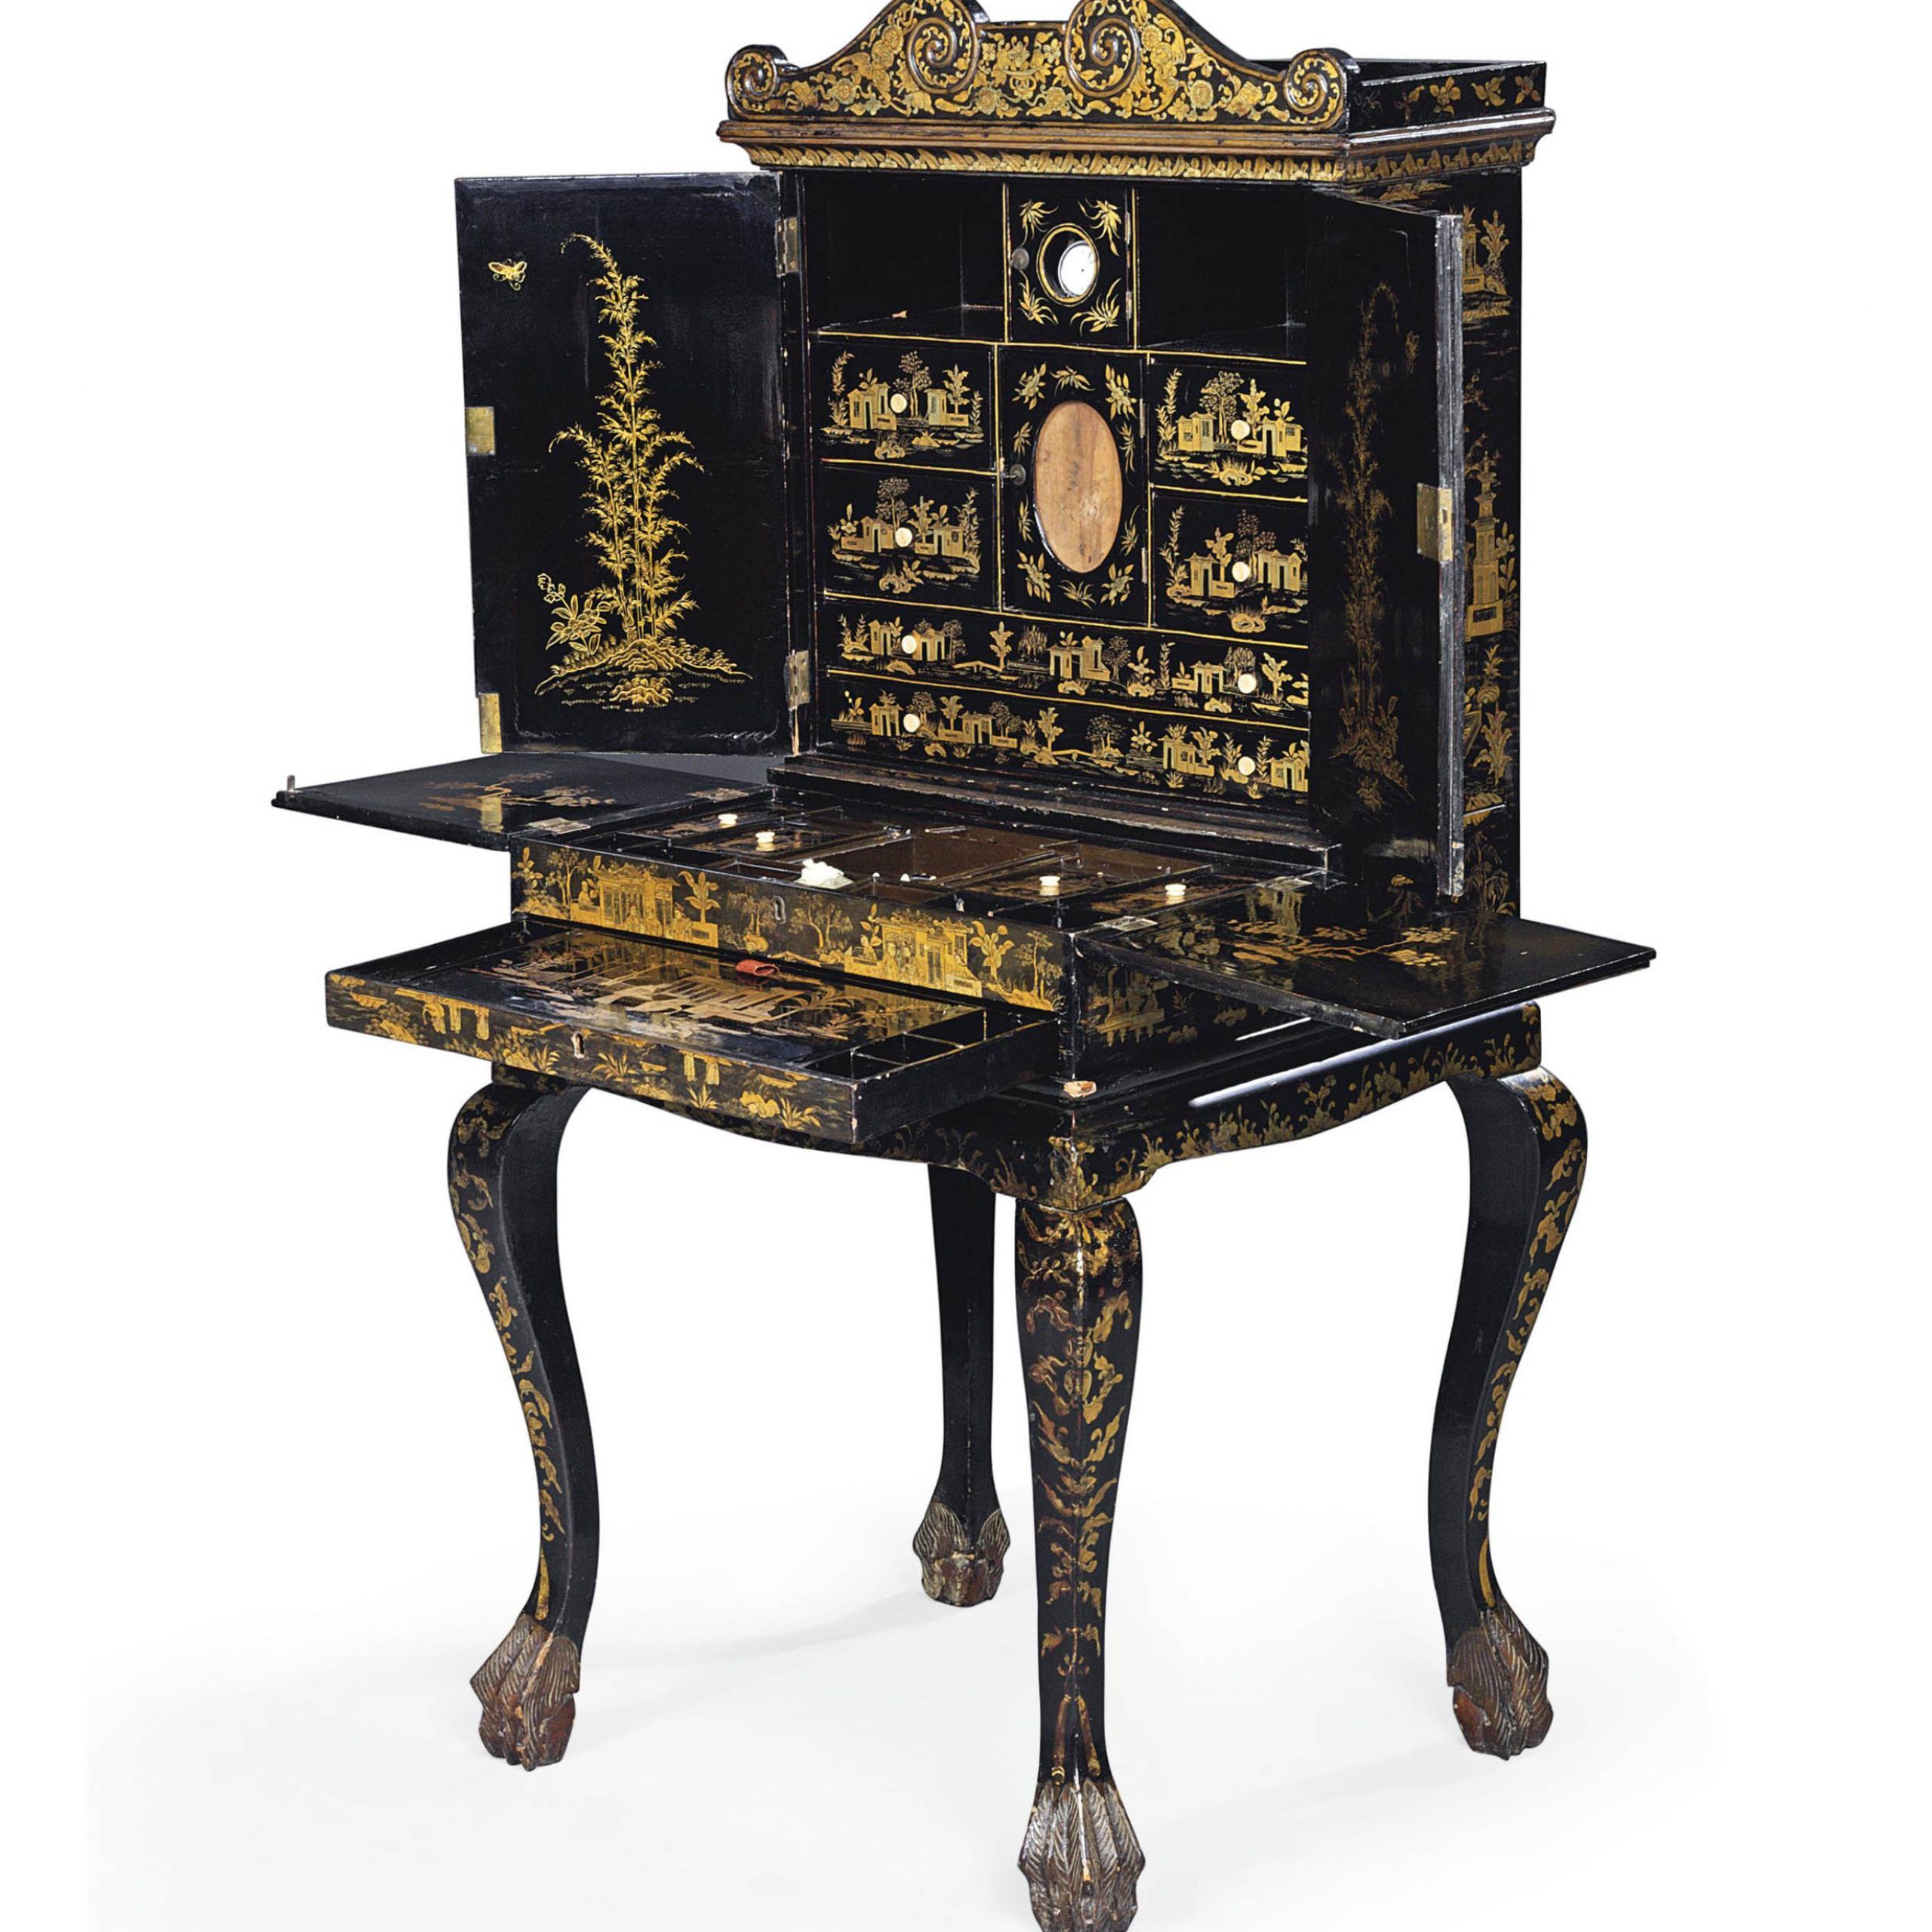 Antique Black Lacquer Furniture 2020 – Hotelsrem Regarding Antique Black Wood 1 Drawer Desks (View 13 of 15)